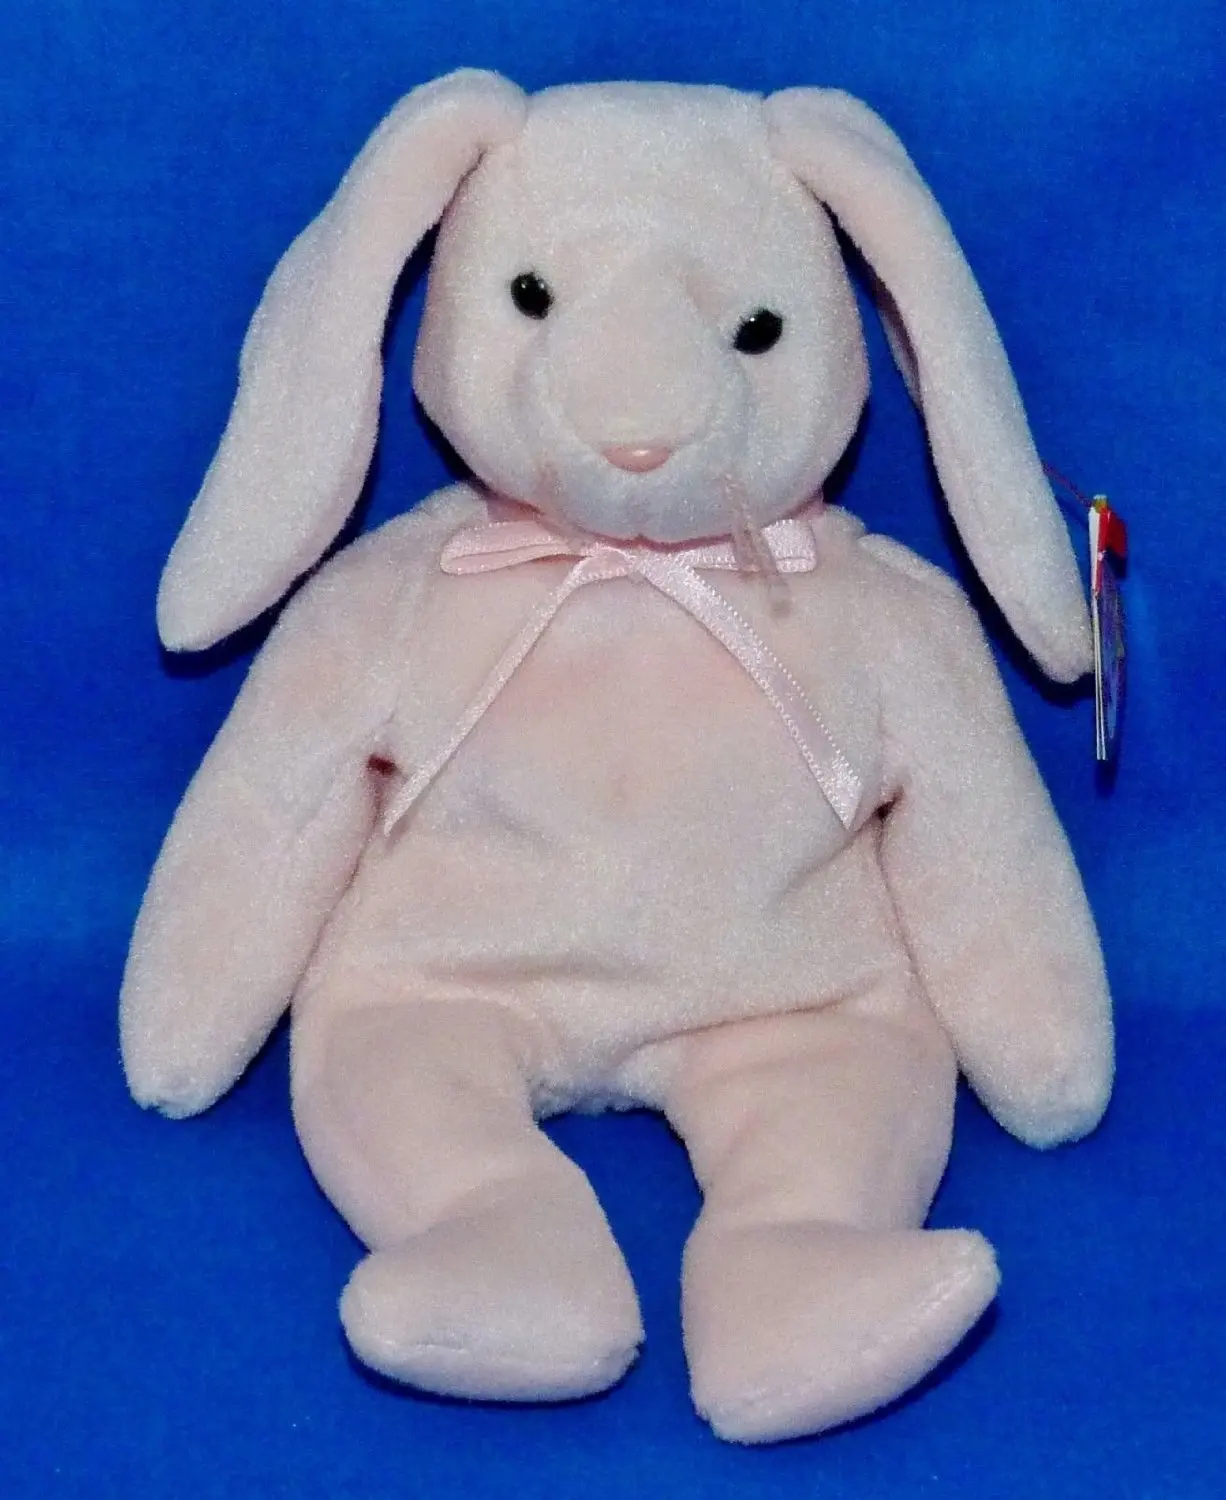 pink rabbit beanie baby